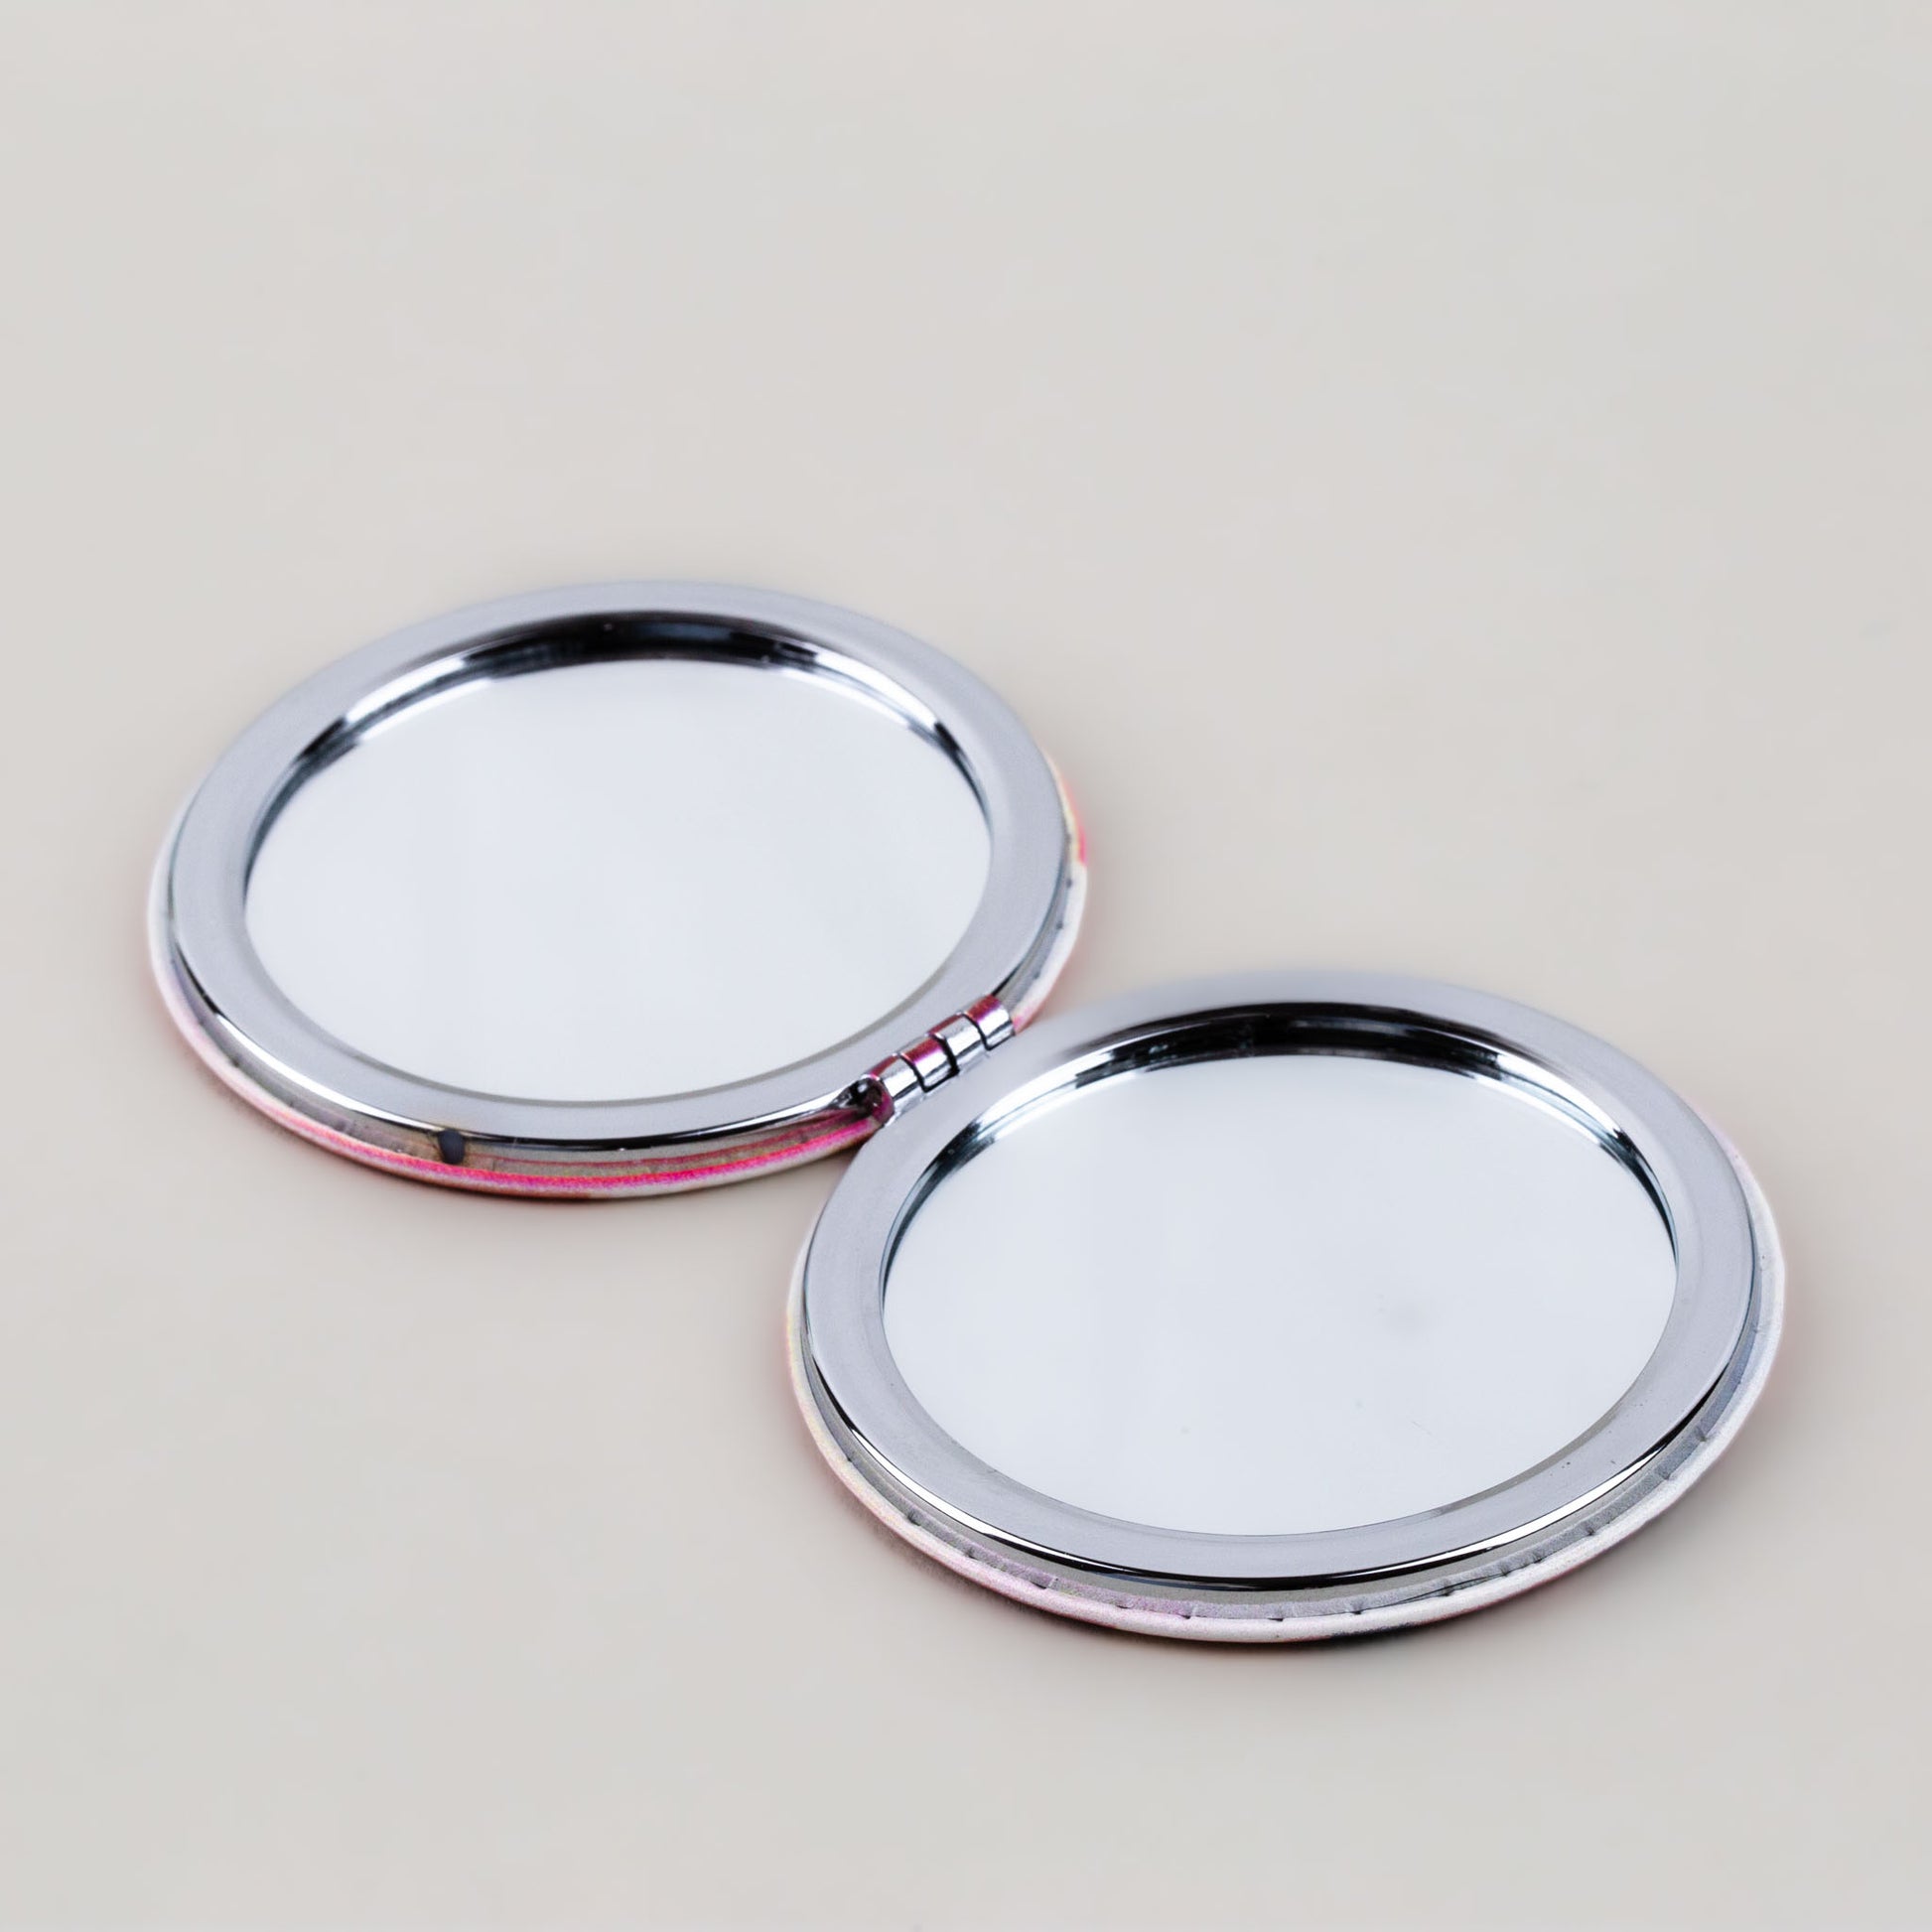 Oglindă de poșetă, formă rotundă cu 2 părți, model seniorita - Dolce